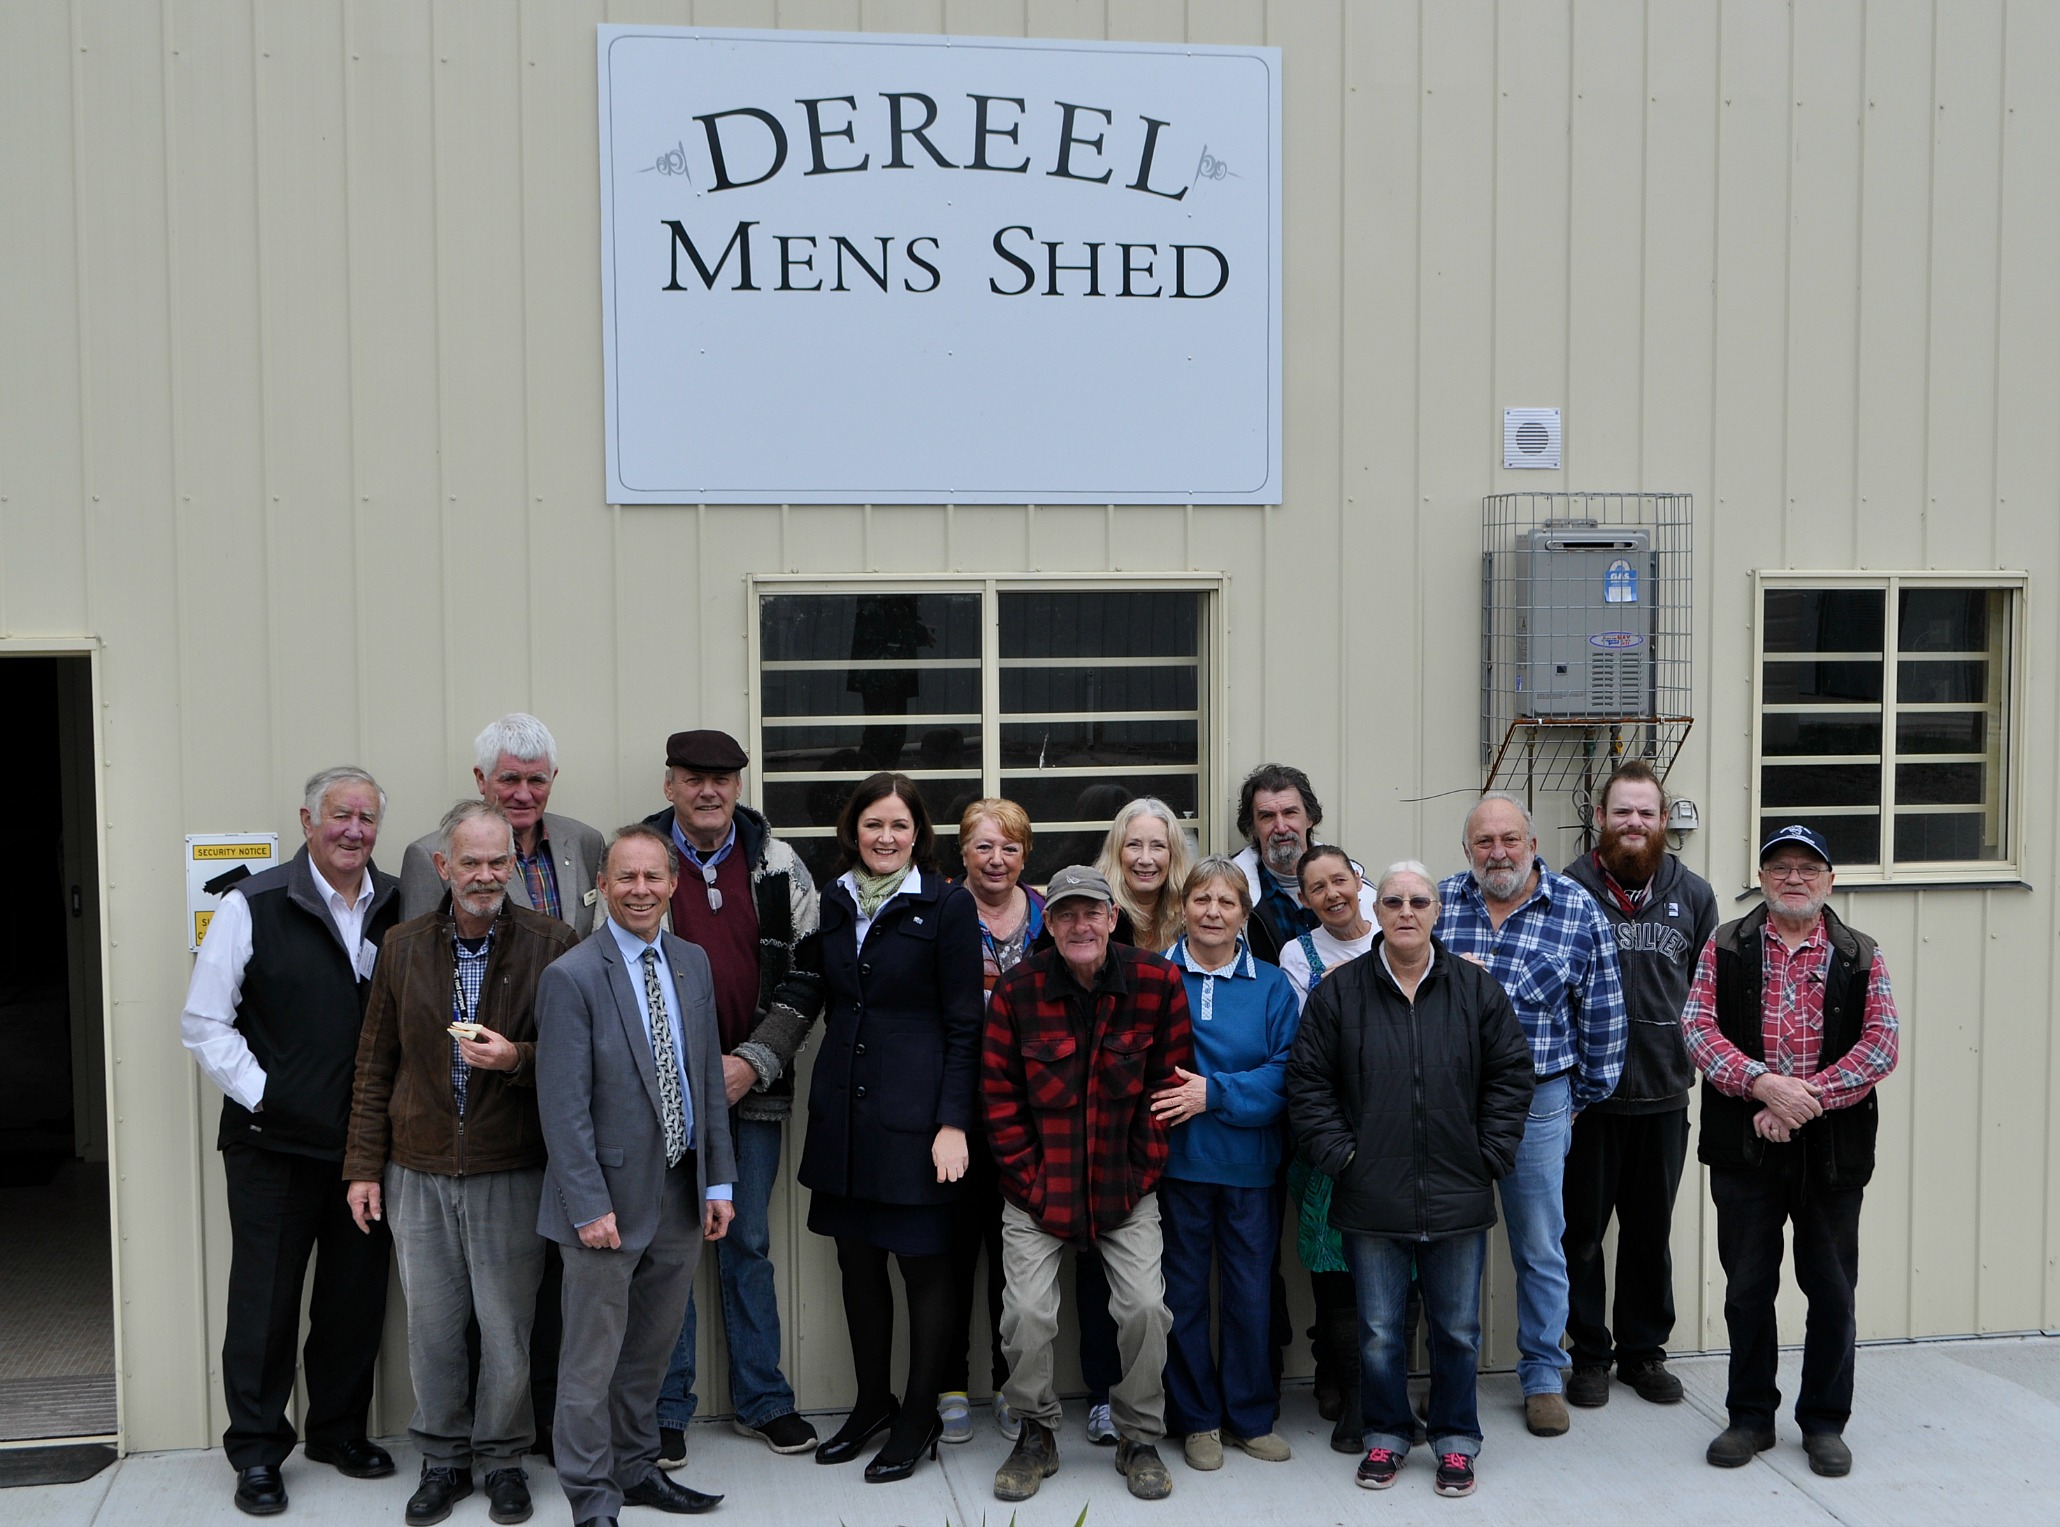 Dereel Men's Shed opening